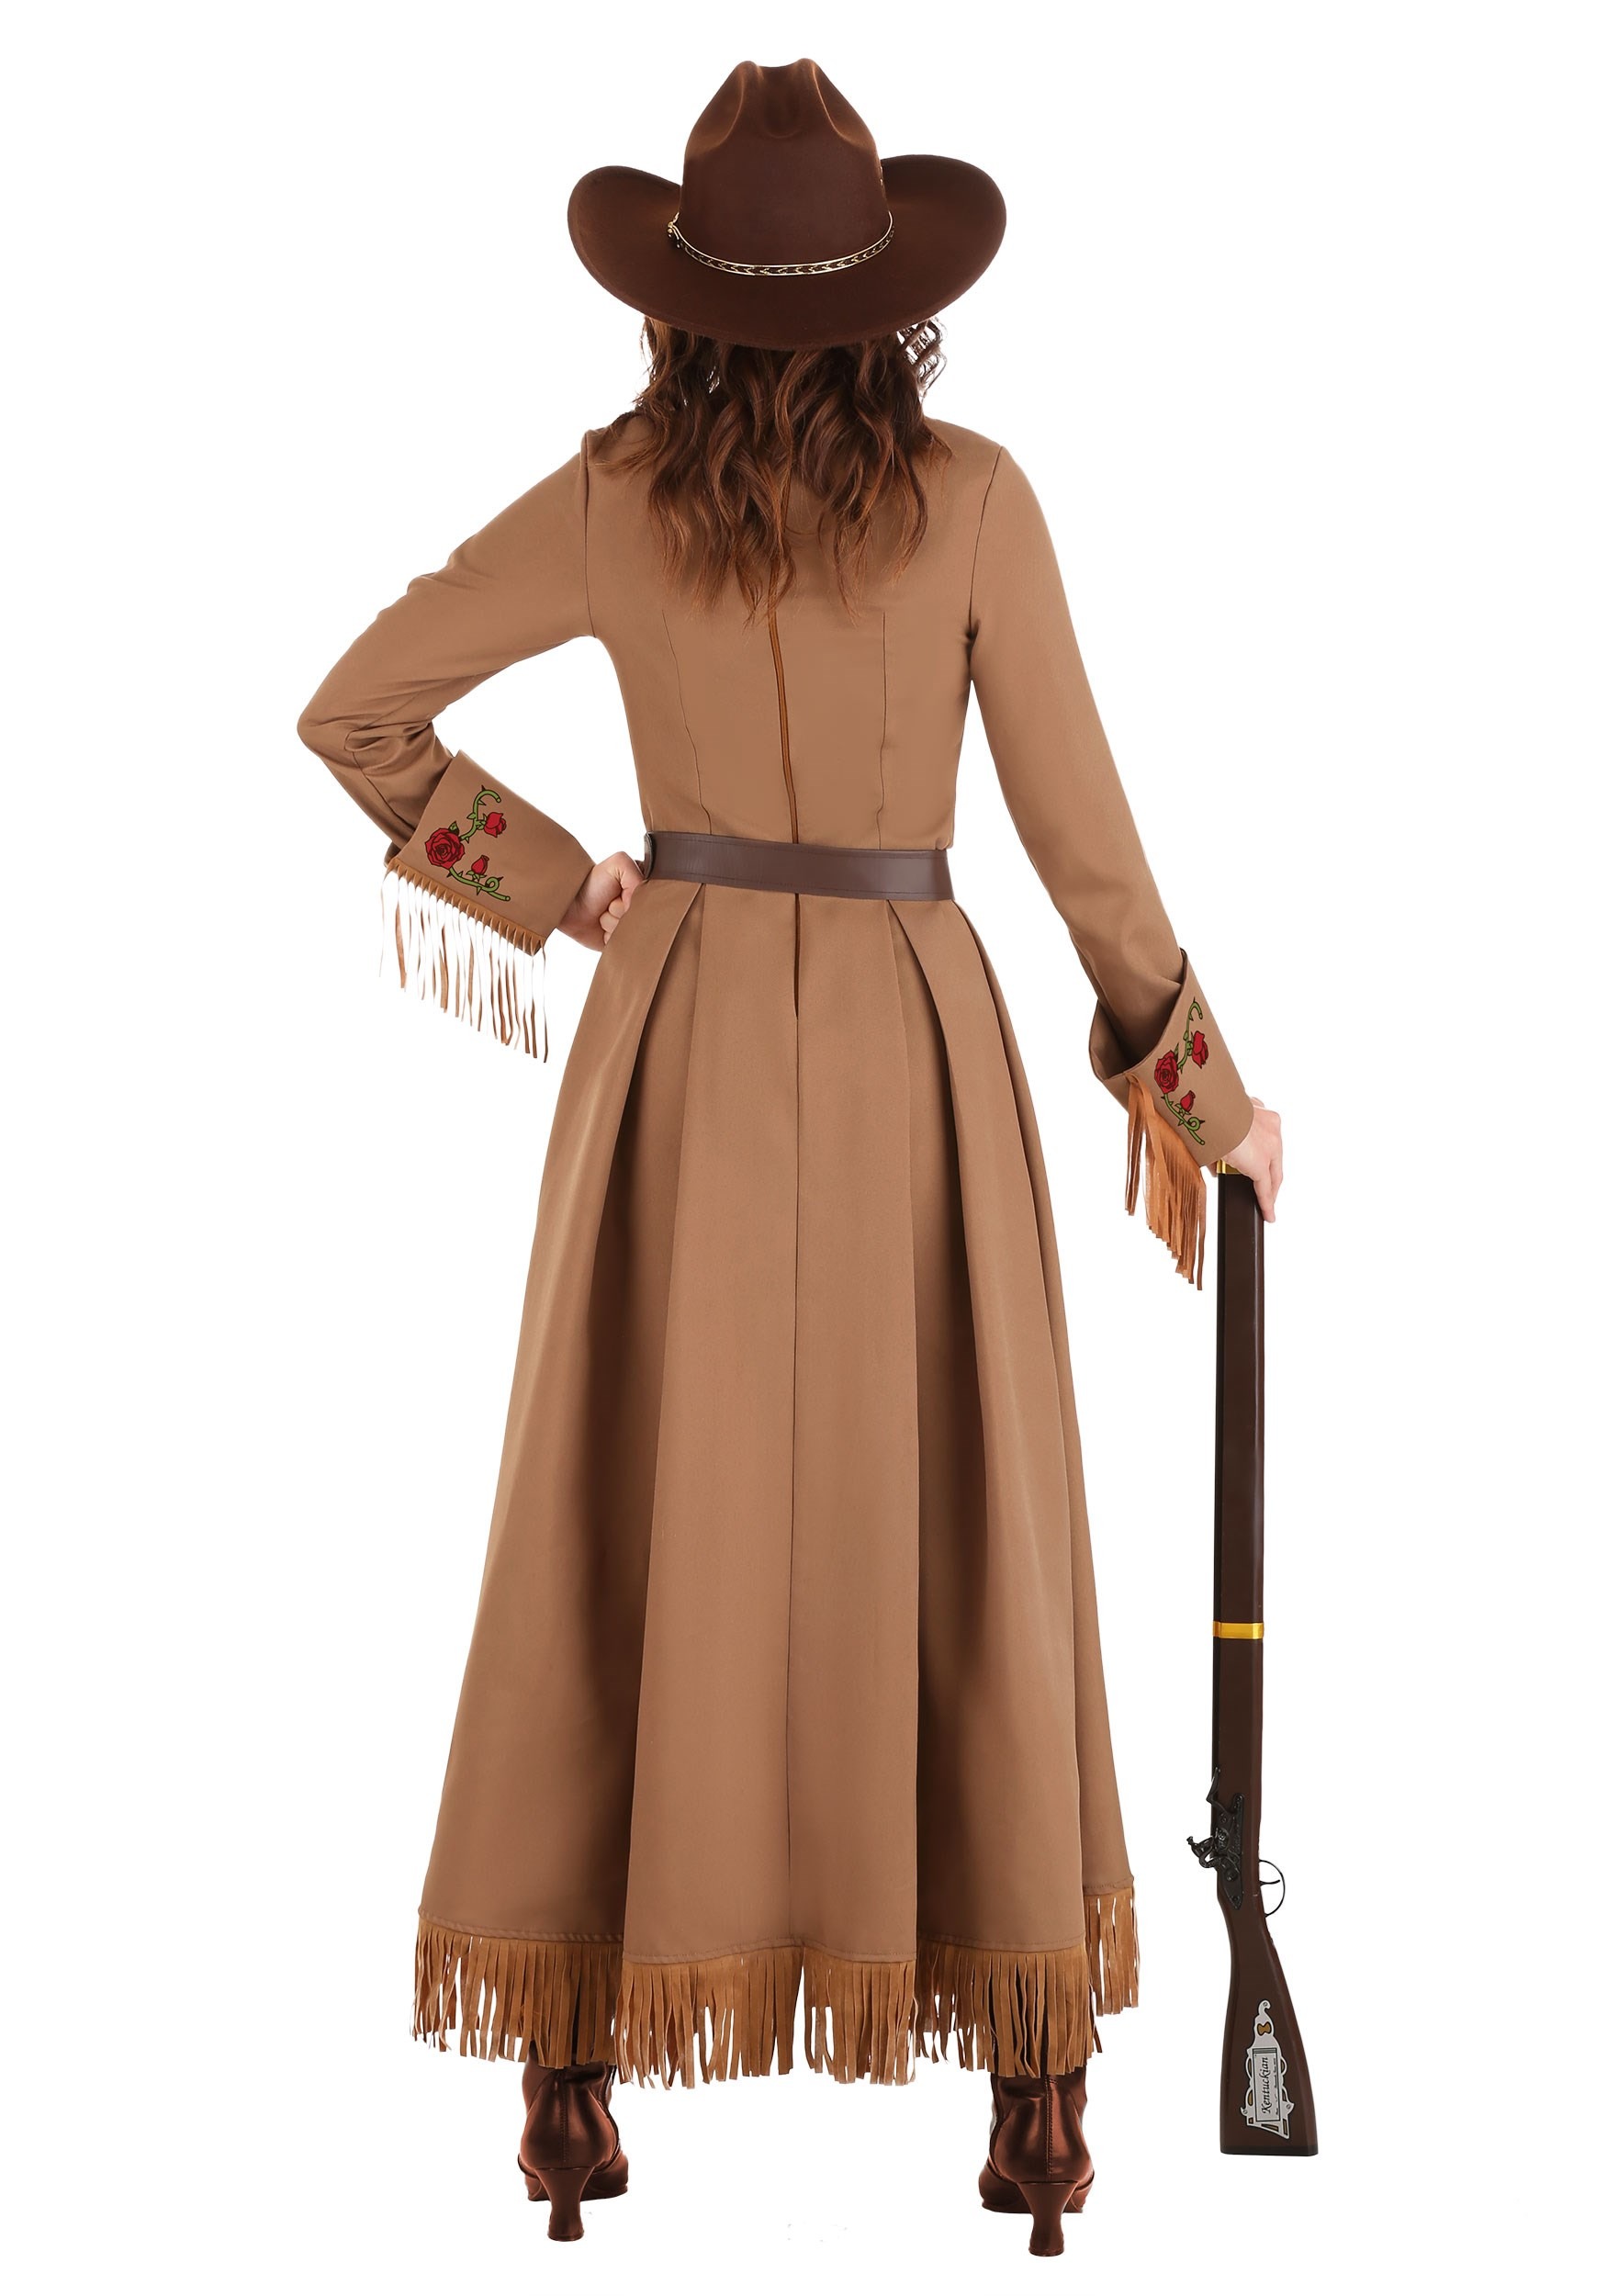 Annie Oakley Cowgirl Fancy Dress Costume For Women , Historical Figure Fancy Dress Costumes